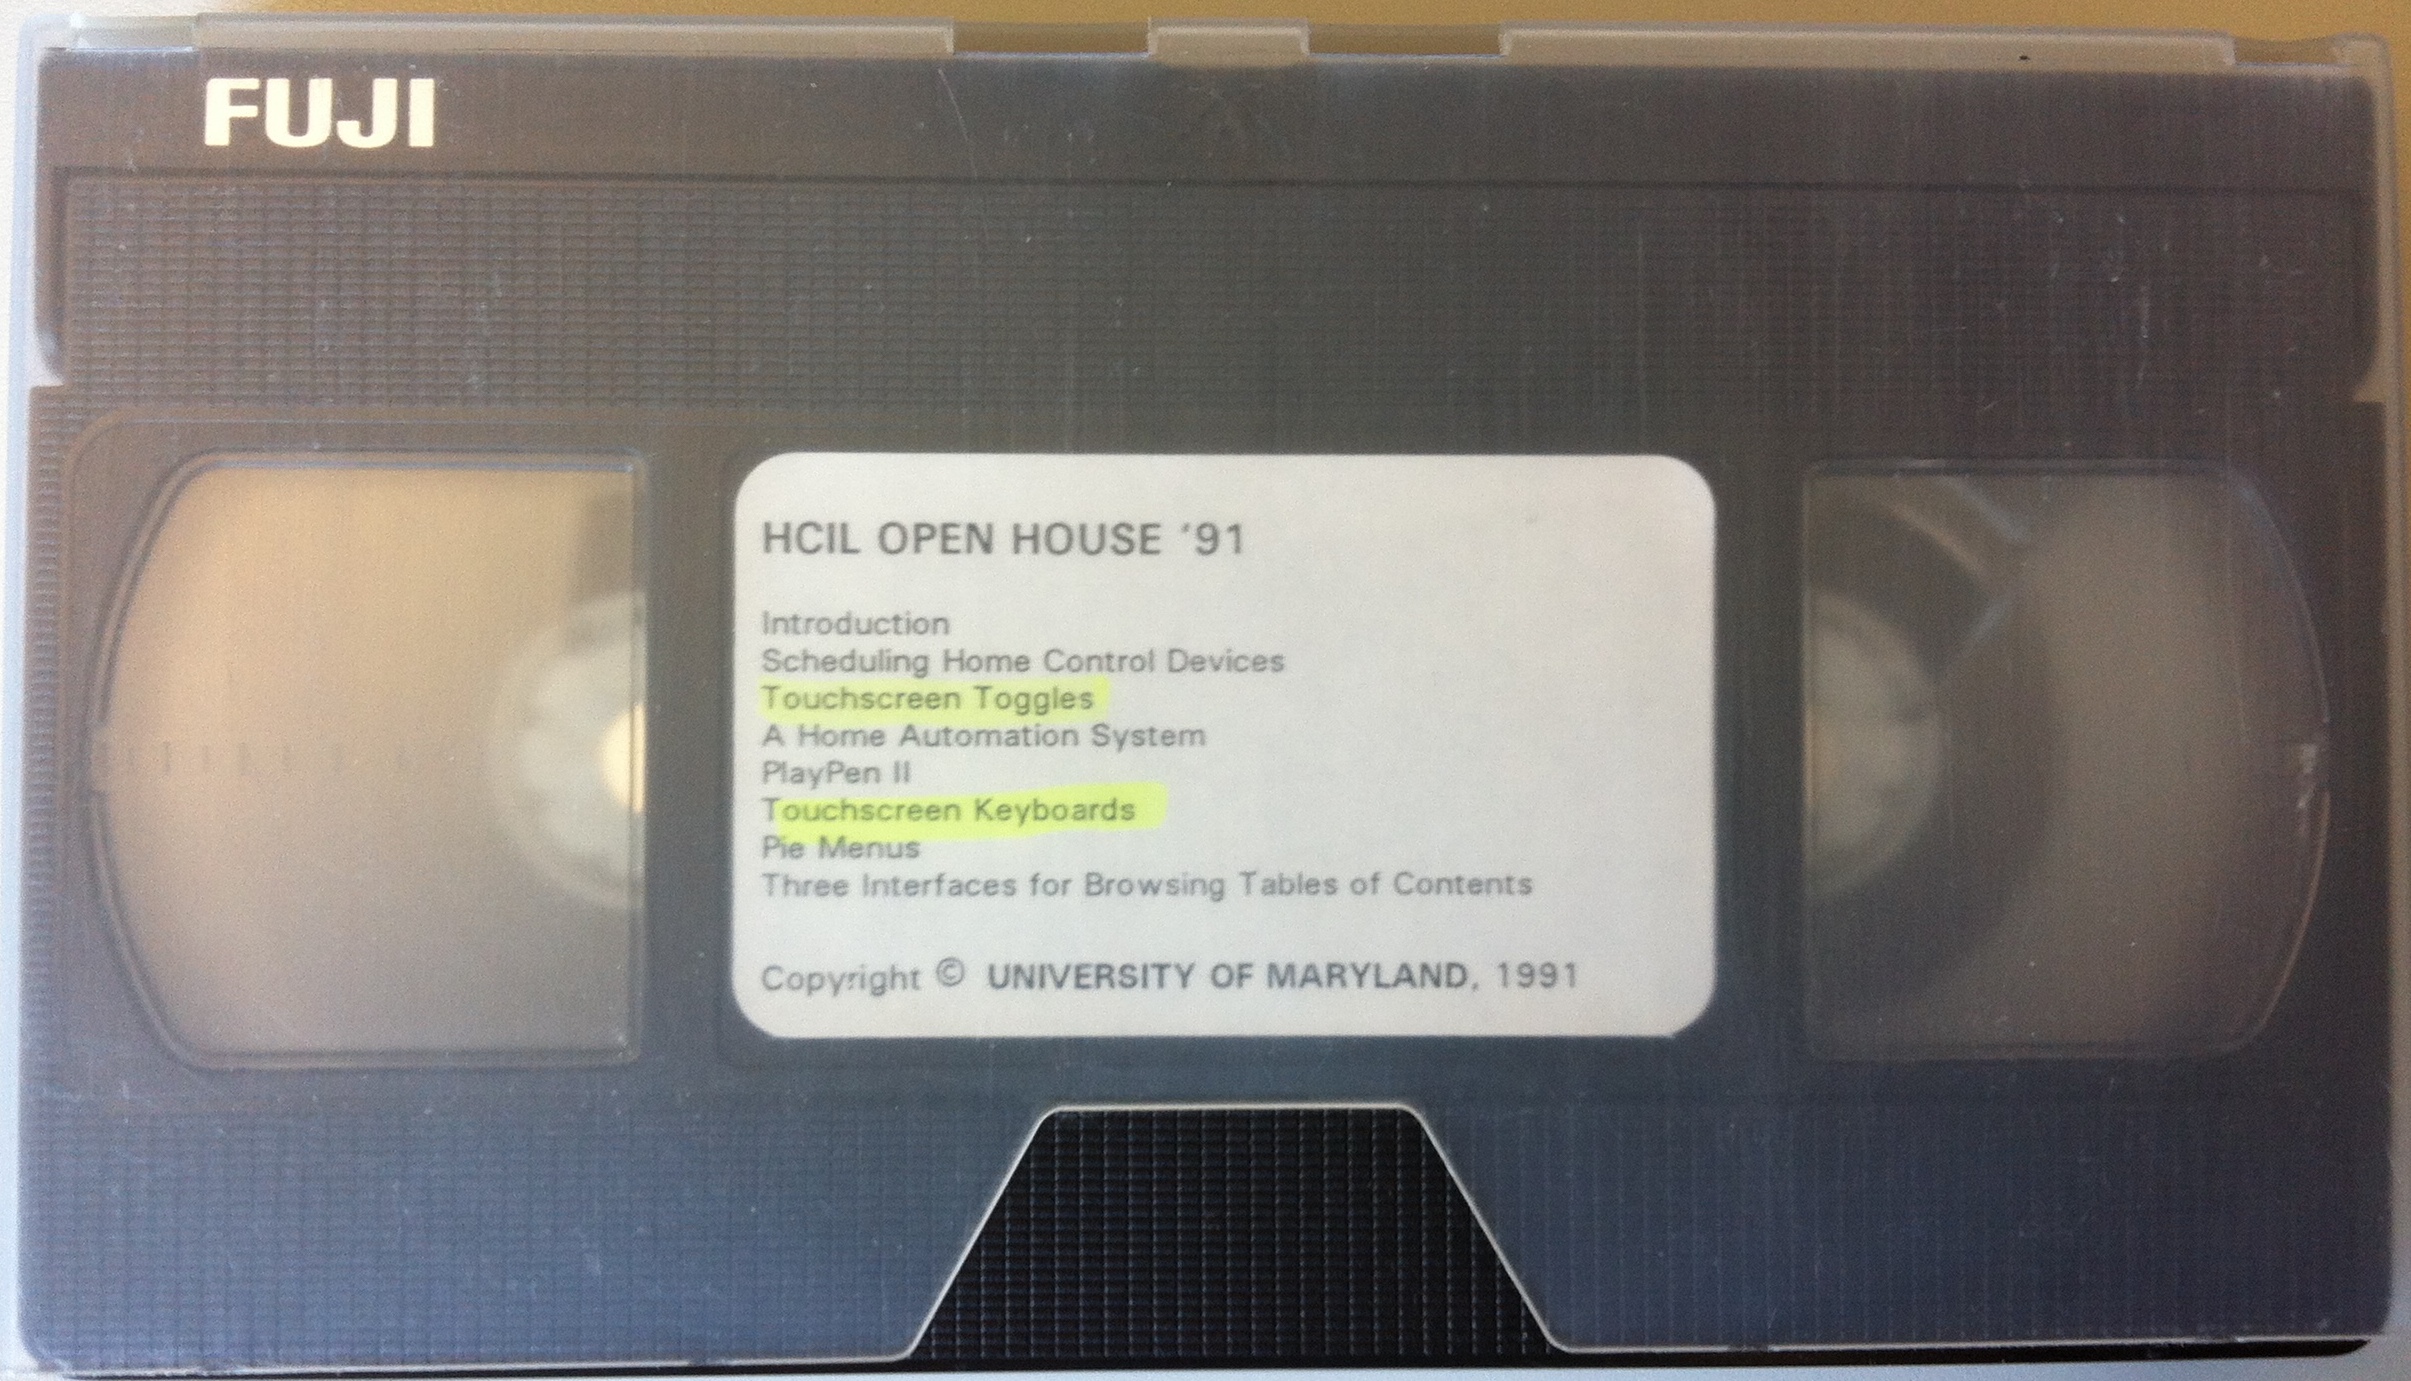 A rectangular VHS videotape of the 1991 HCIL Video